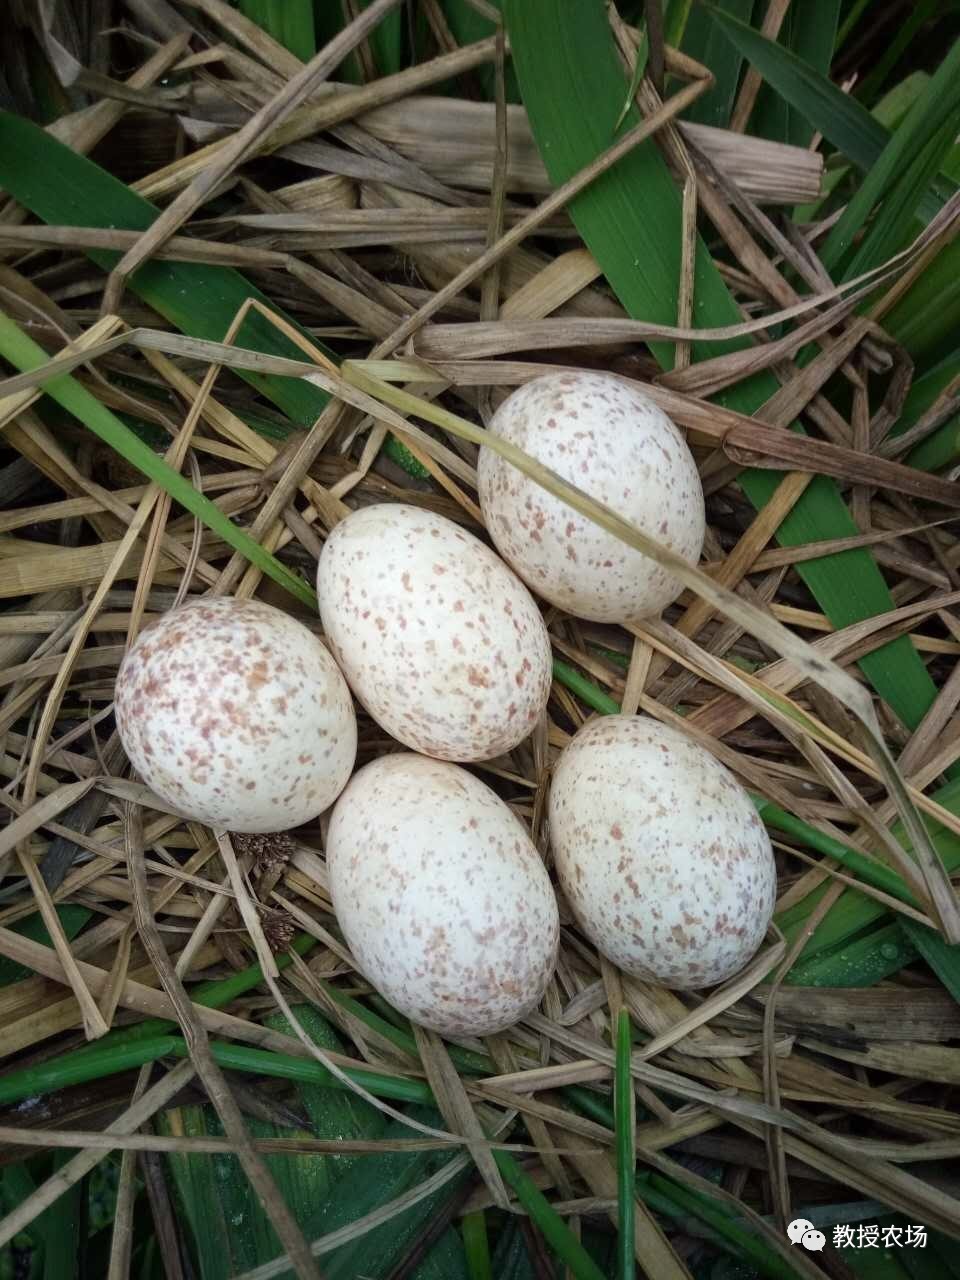 上网查了一下好像不太符合:白鹭繁殖期为每年的5-7月,且蛋的颜色为淡